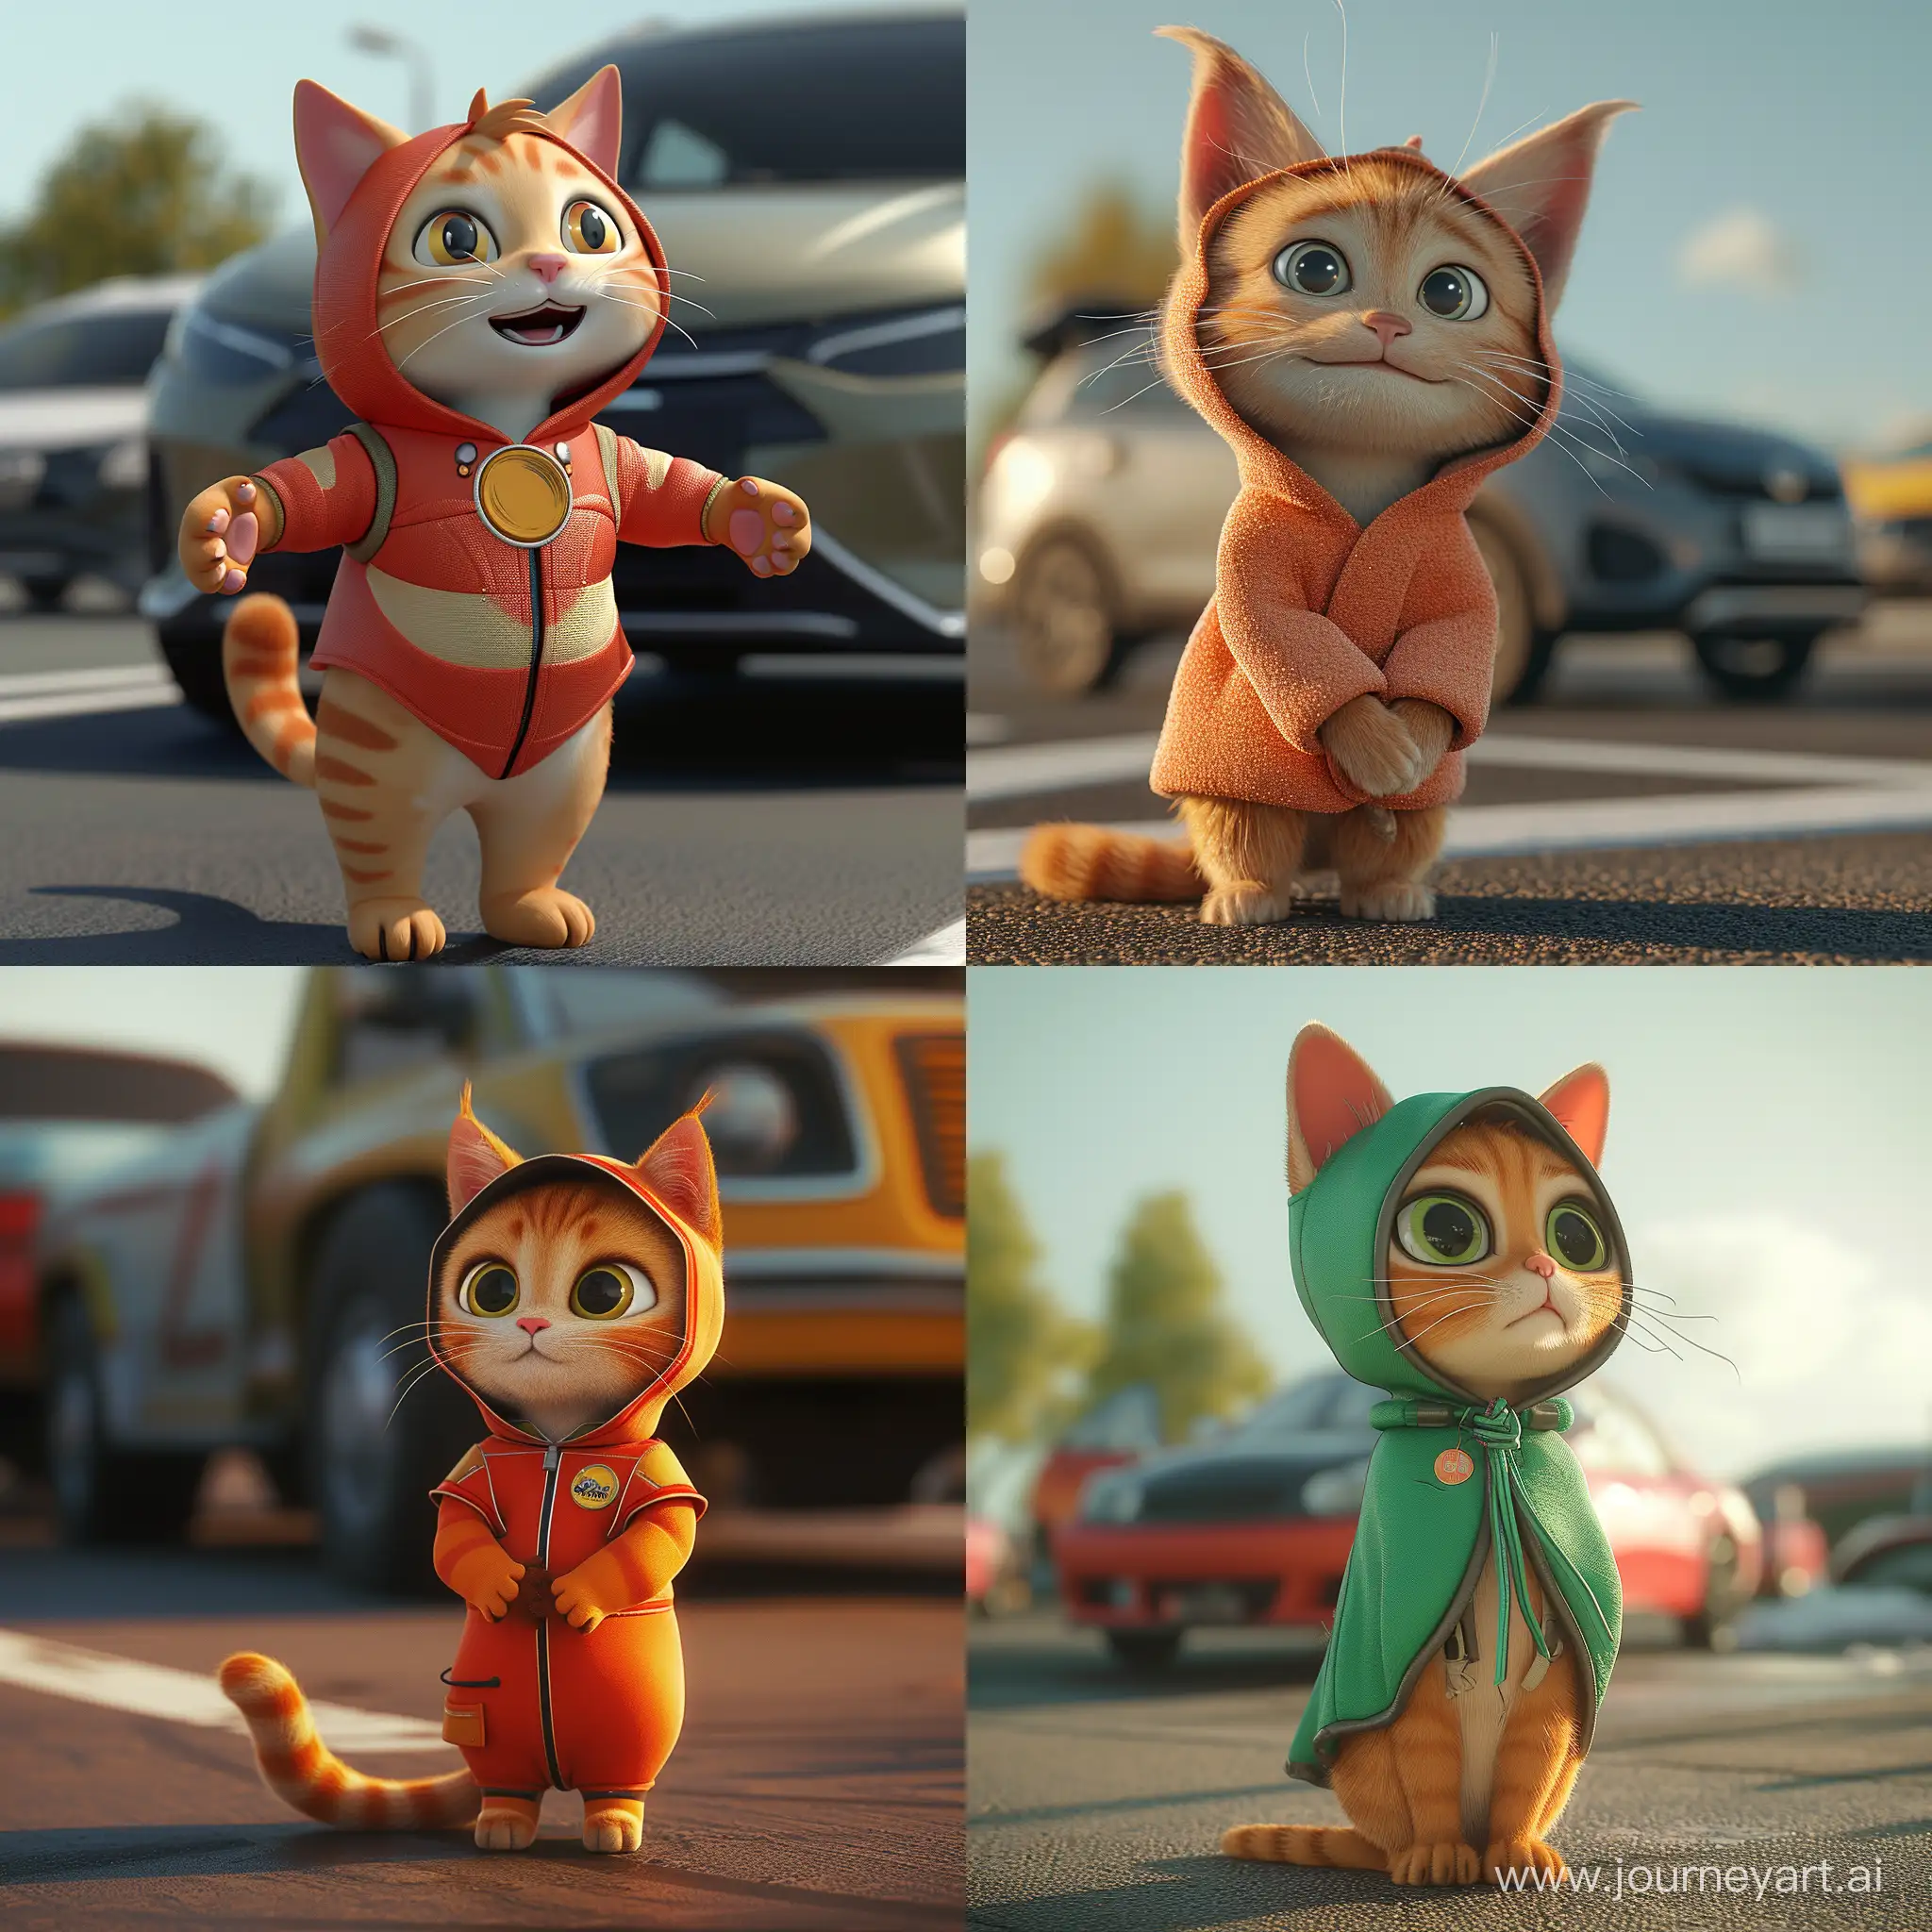 Создай мультяшного 3d кота в стиле pixar, в костюме на фоне машины 